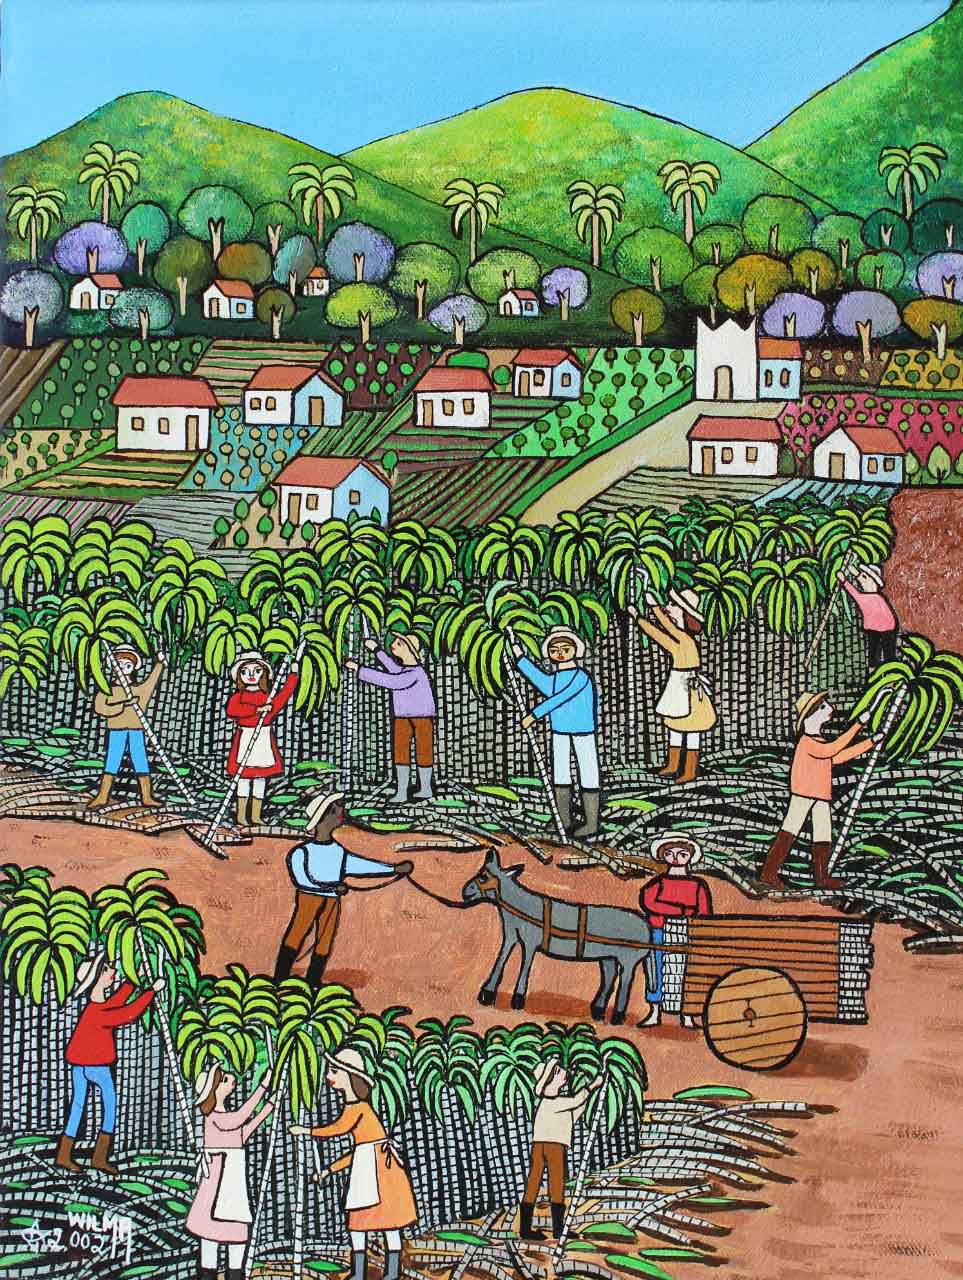 ウィルマ・ラモス, サトウキビの収穫, 40x30 - 2002. 写真: ディスクロージャー.